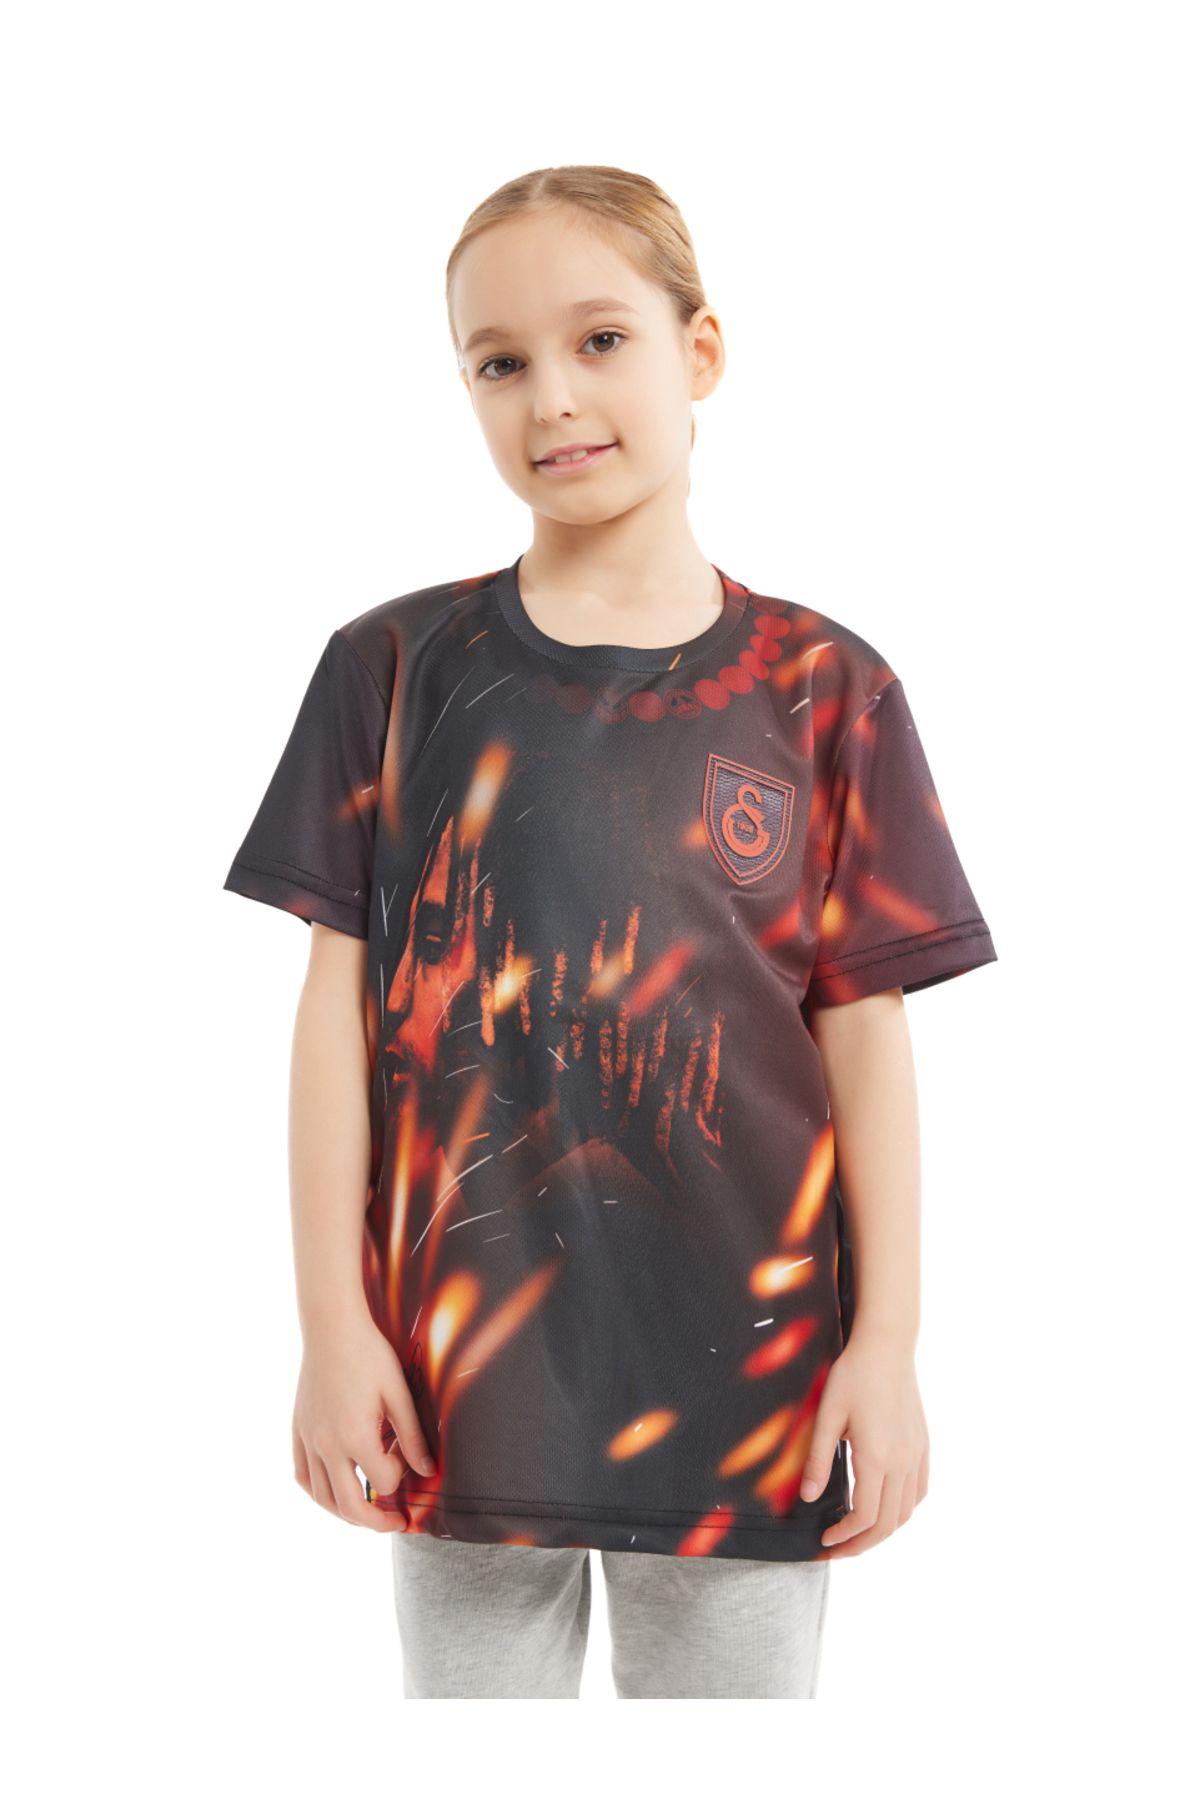 Galatasaray Galatasaray Çocuk Sacha Boey Design FC T-shirt C232264